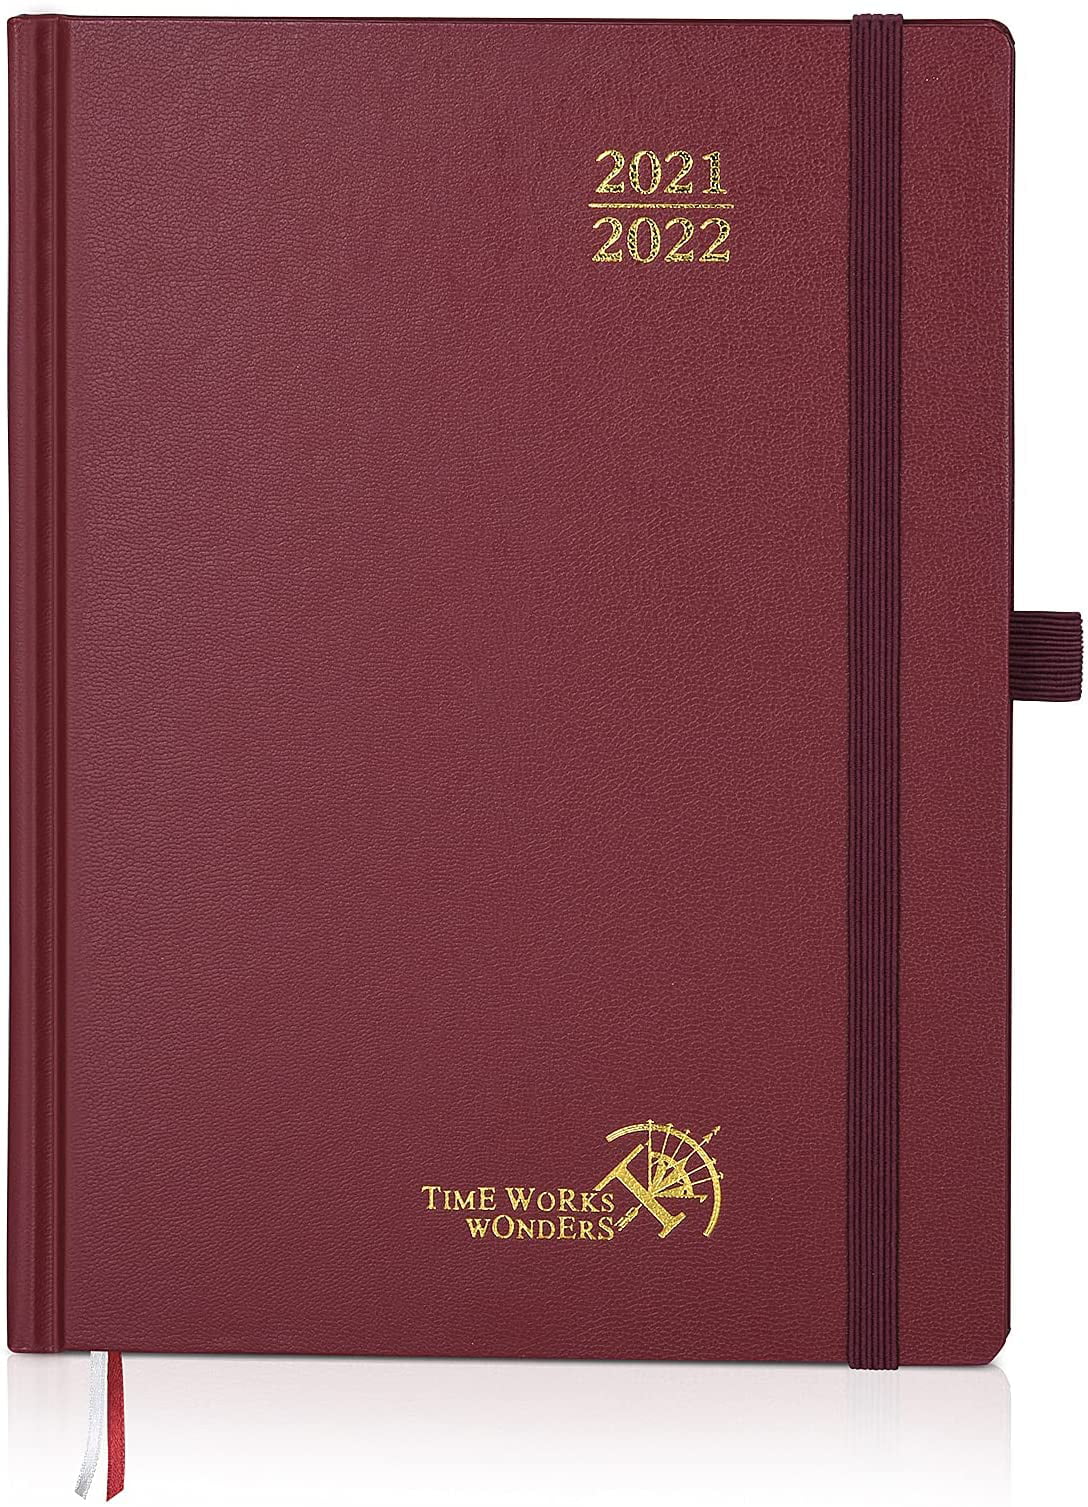 2021 2022 Pocket Purse Size Planner Calendar 20 21 Organizer Agenda Schedule 